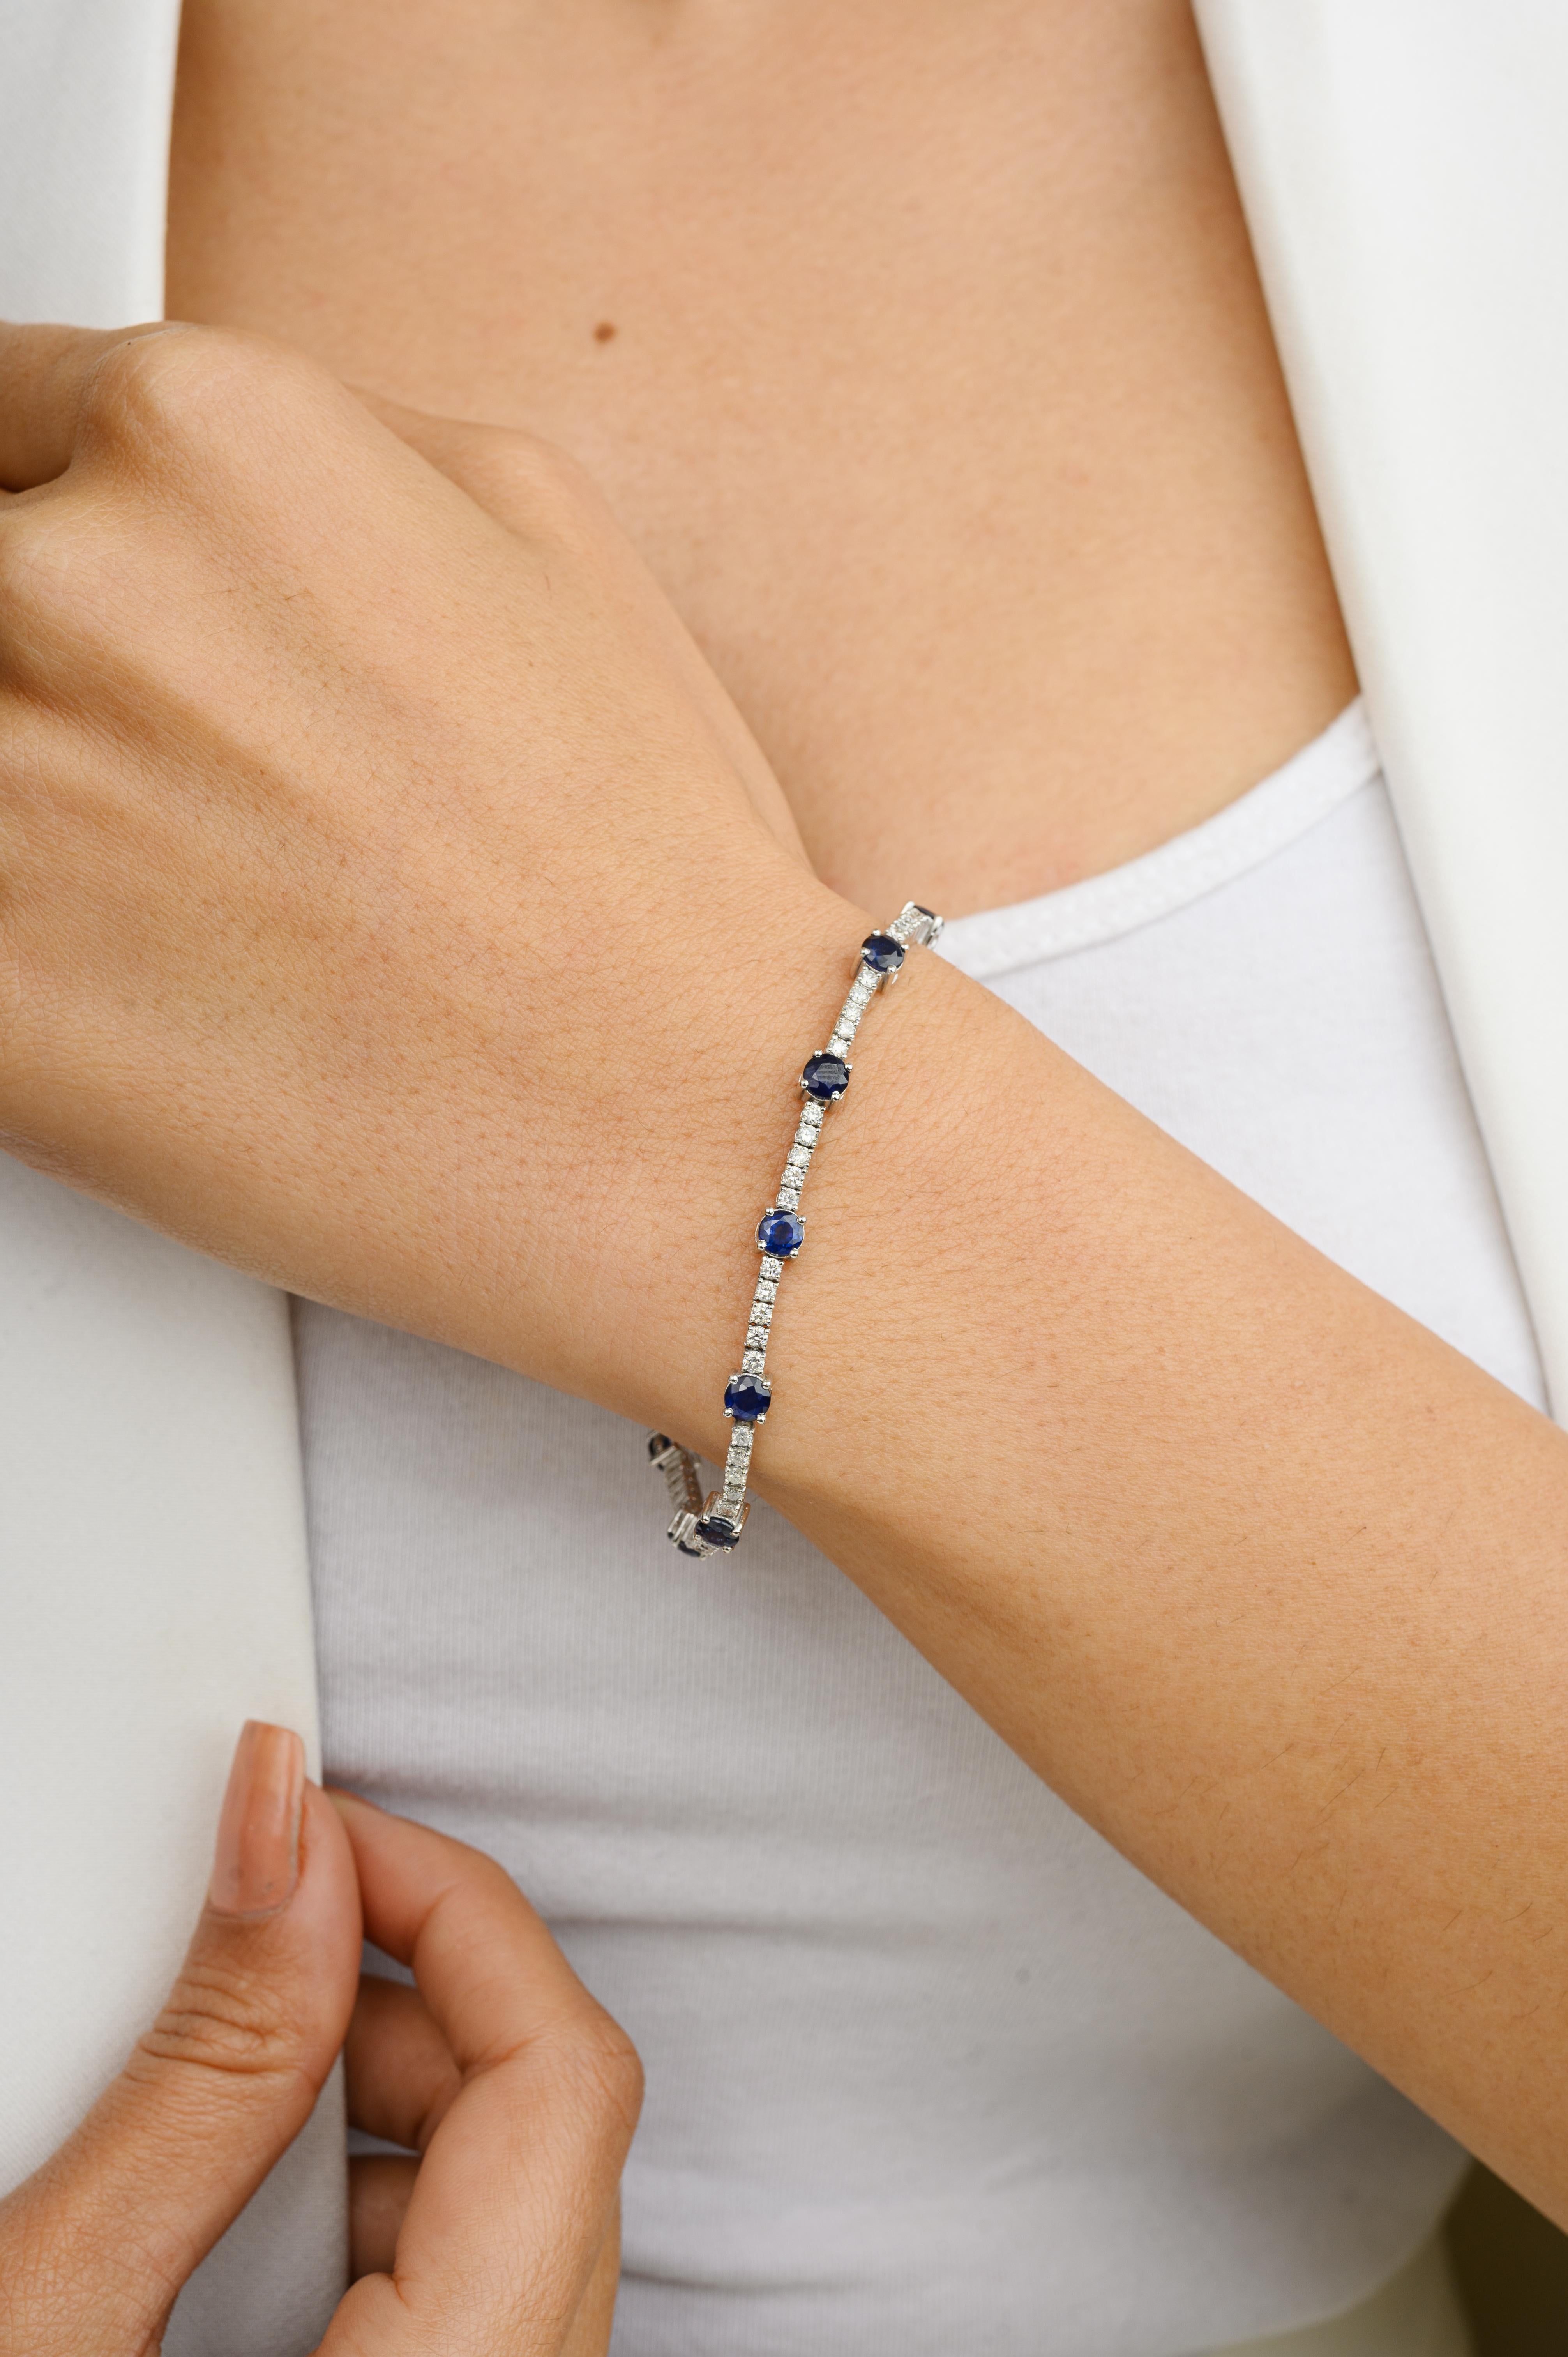 Ce bracelet de fiançailles en or 18 carats, orné de diamants fins et de saphirs bleus, met en valeur un saphir bleu naturel de 3,57 carats et des diamants de 1,41 carats, étincelants à l'infini. Il mesure 7 pouces de long. 
Le saphir stimule la